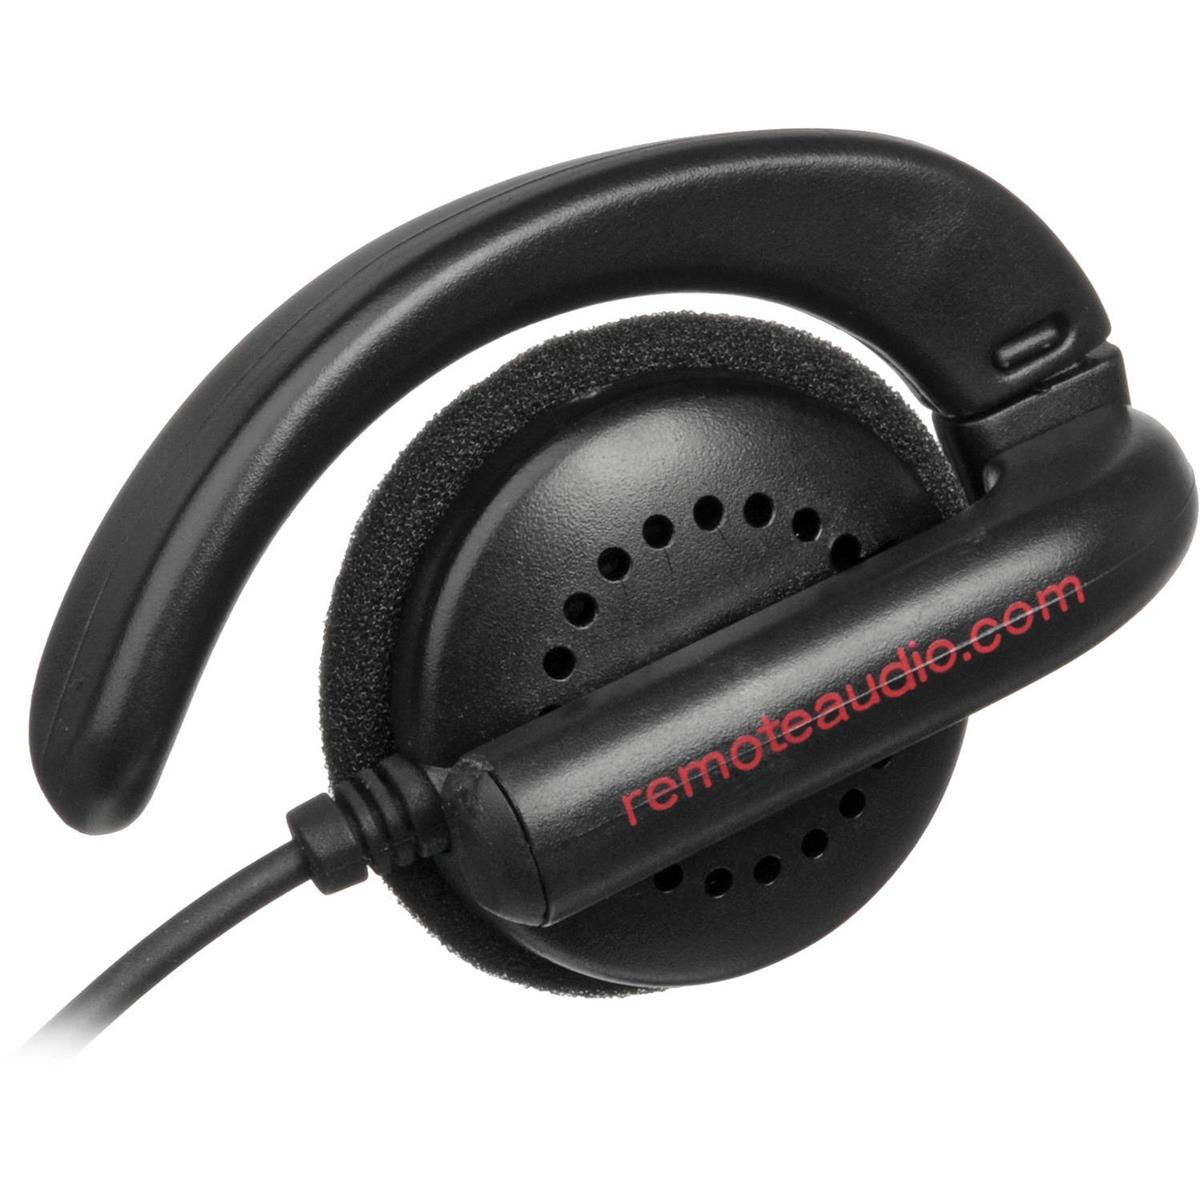 

Remote Audio EAR BUD Single Earphone with Swiveling Ear Hook